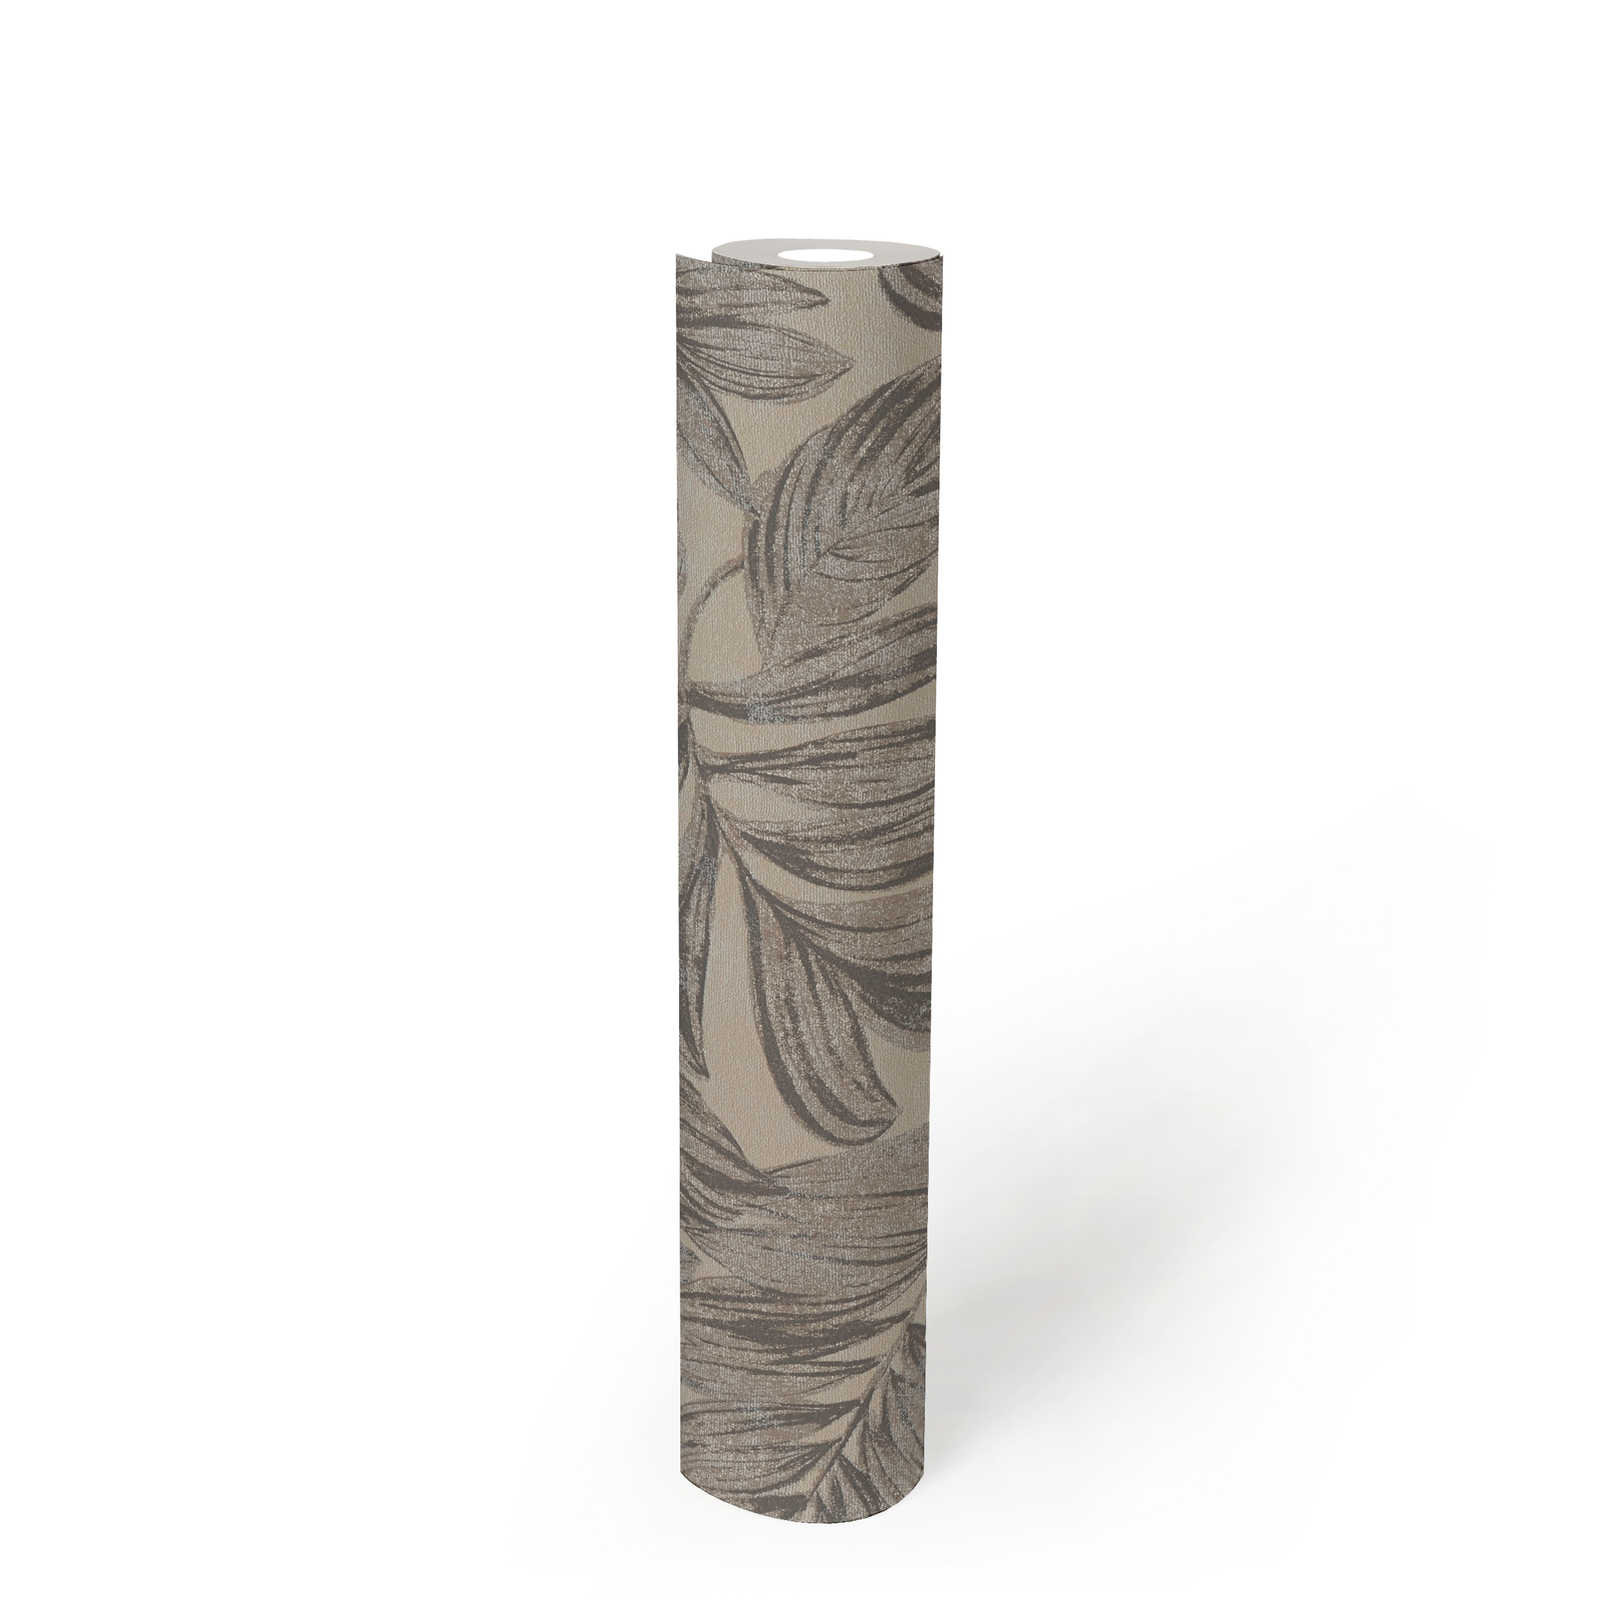             papier peint en papier intissé avec motifs de feuilles de jungle - marron, gris, beige
        